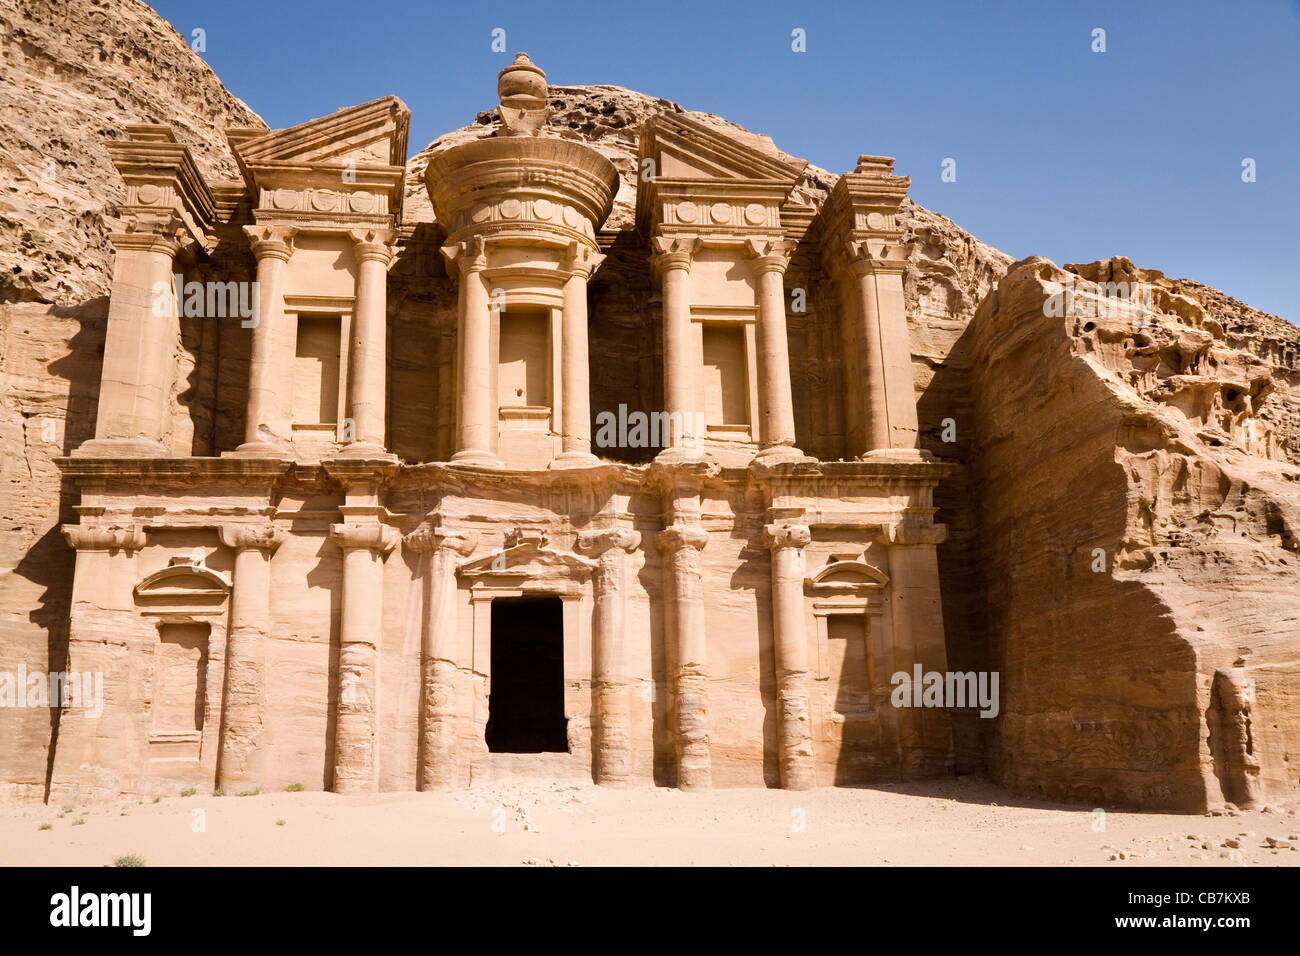 Avant de "Le Monastère" à la cité perdue de Petra en Jordanie. Petra a été redécouverte dans l'année 1812. Banque D'Images